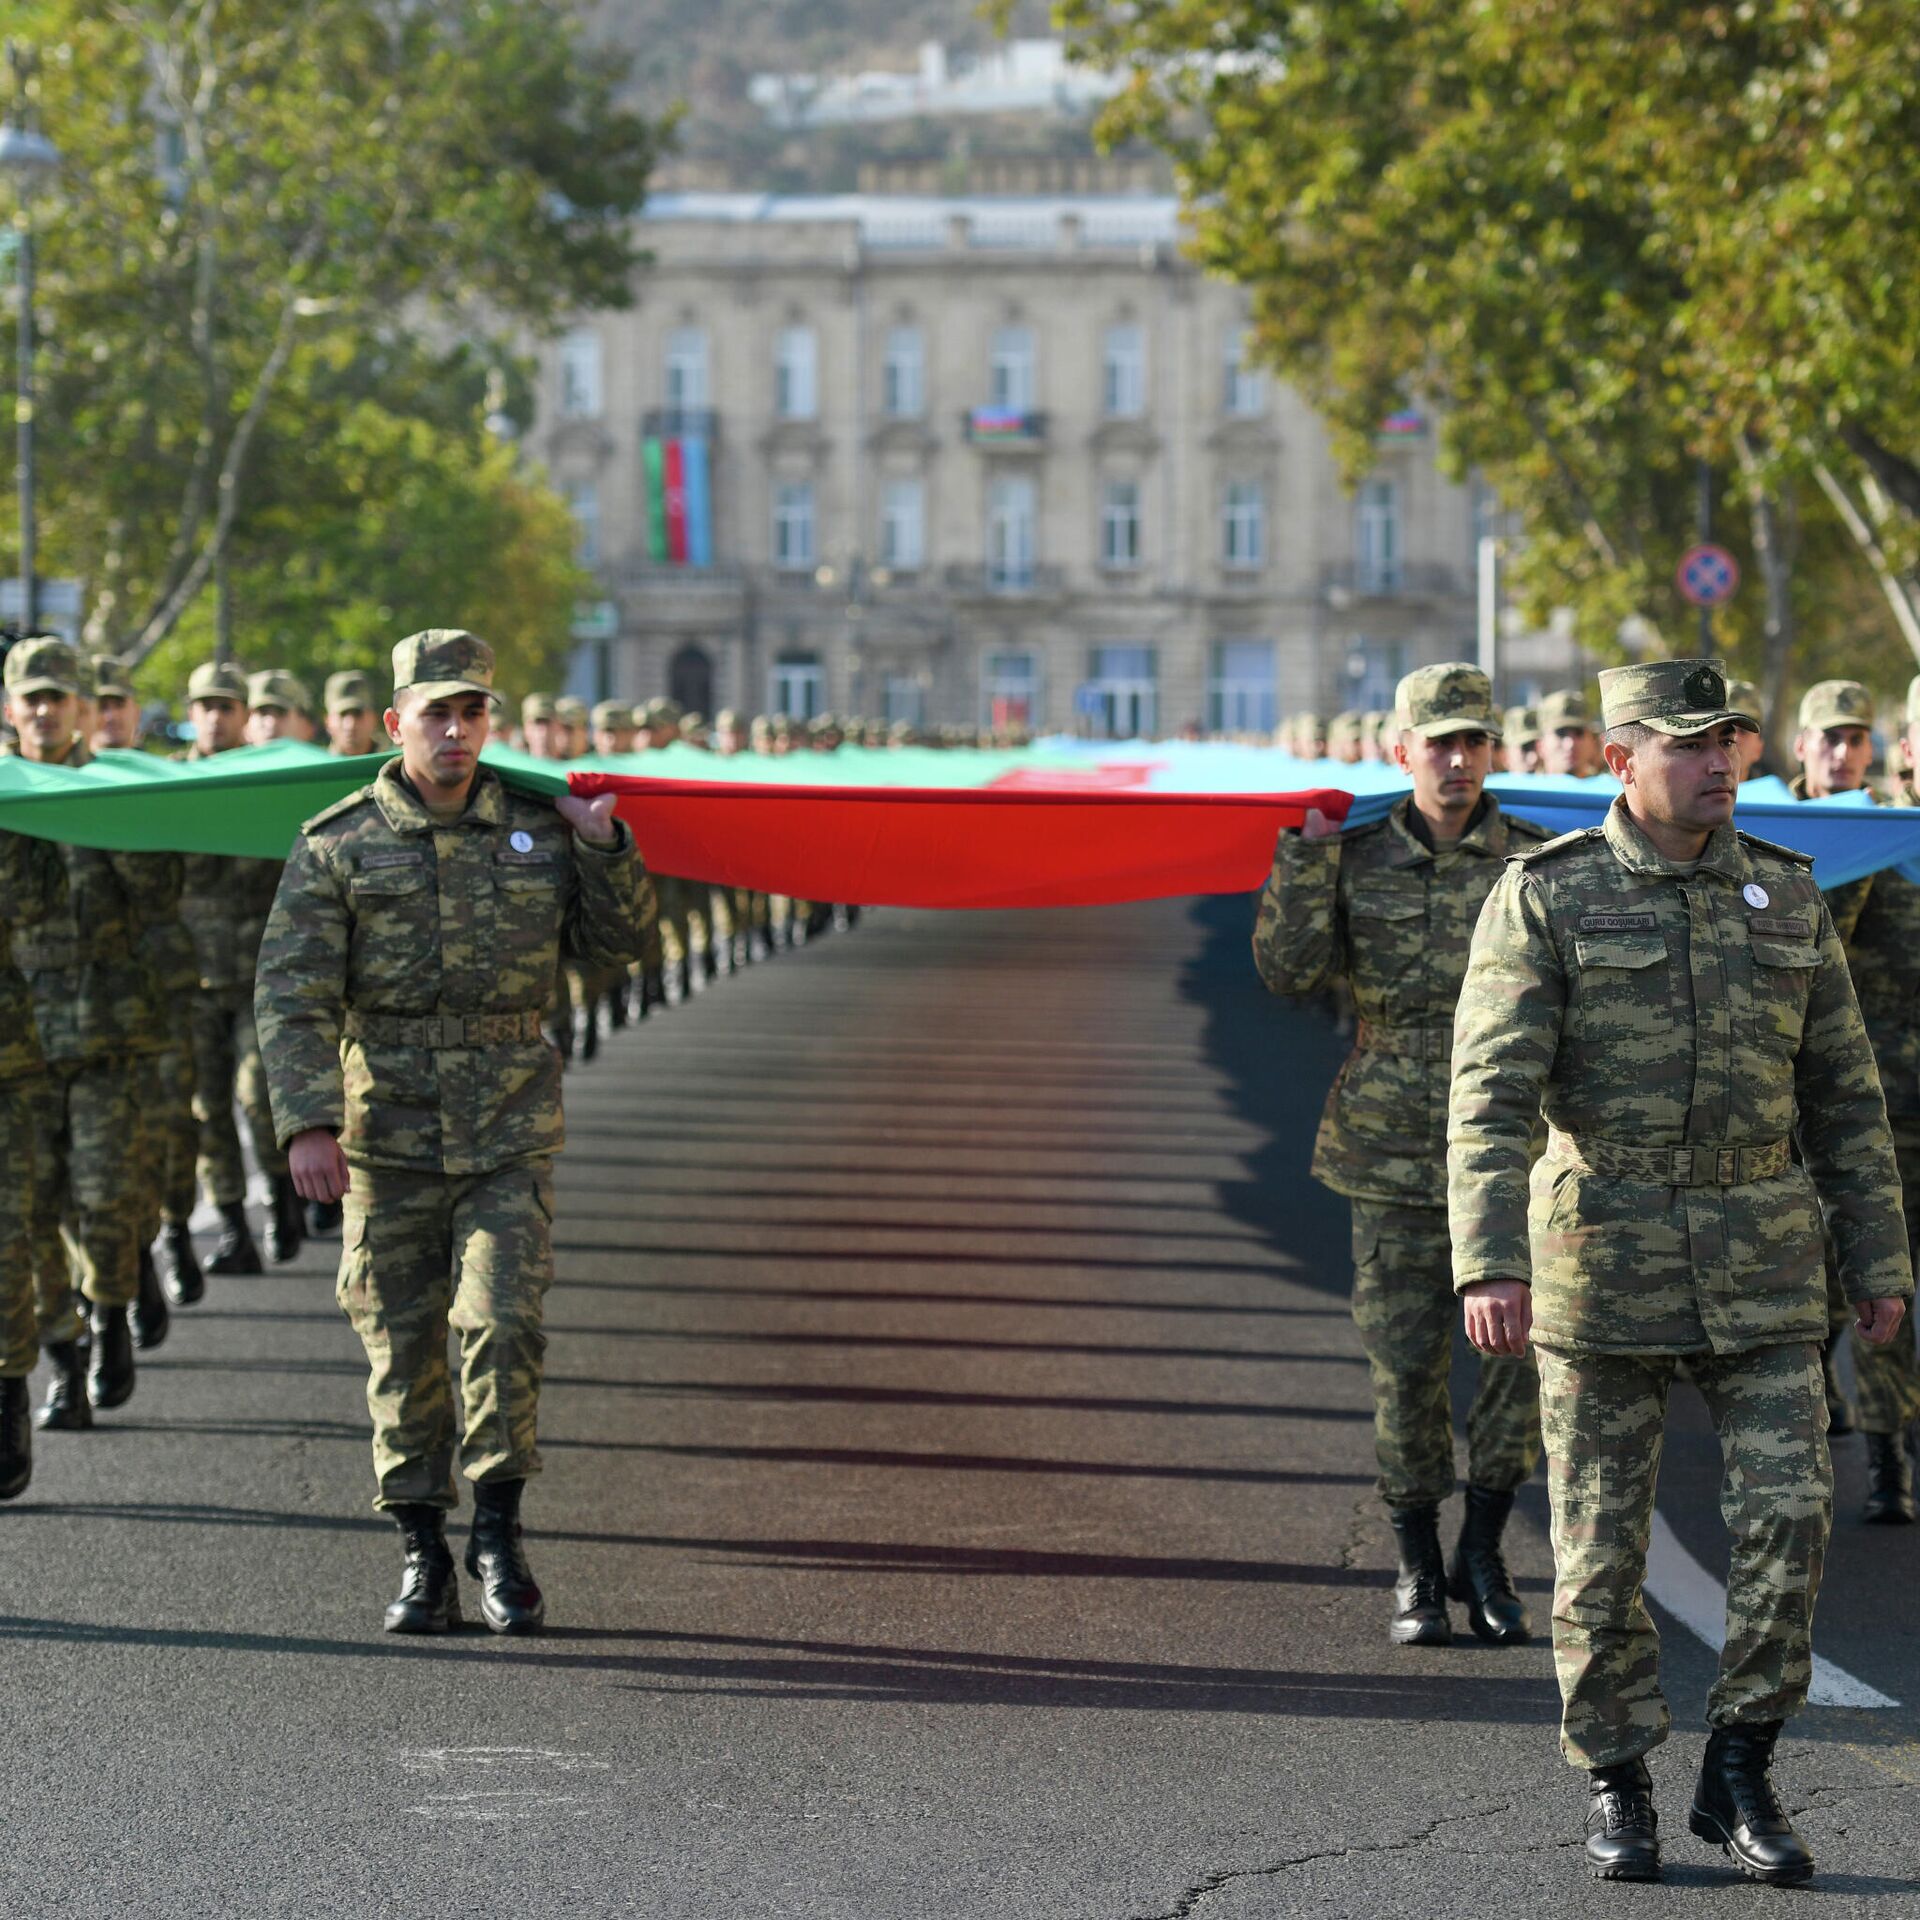 Азербайджанский марш. Как маршируют в Азербайджане. Азербайджан в ноябре